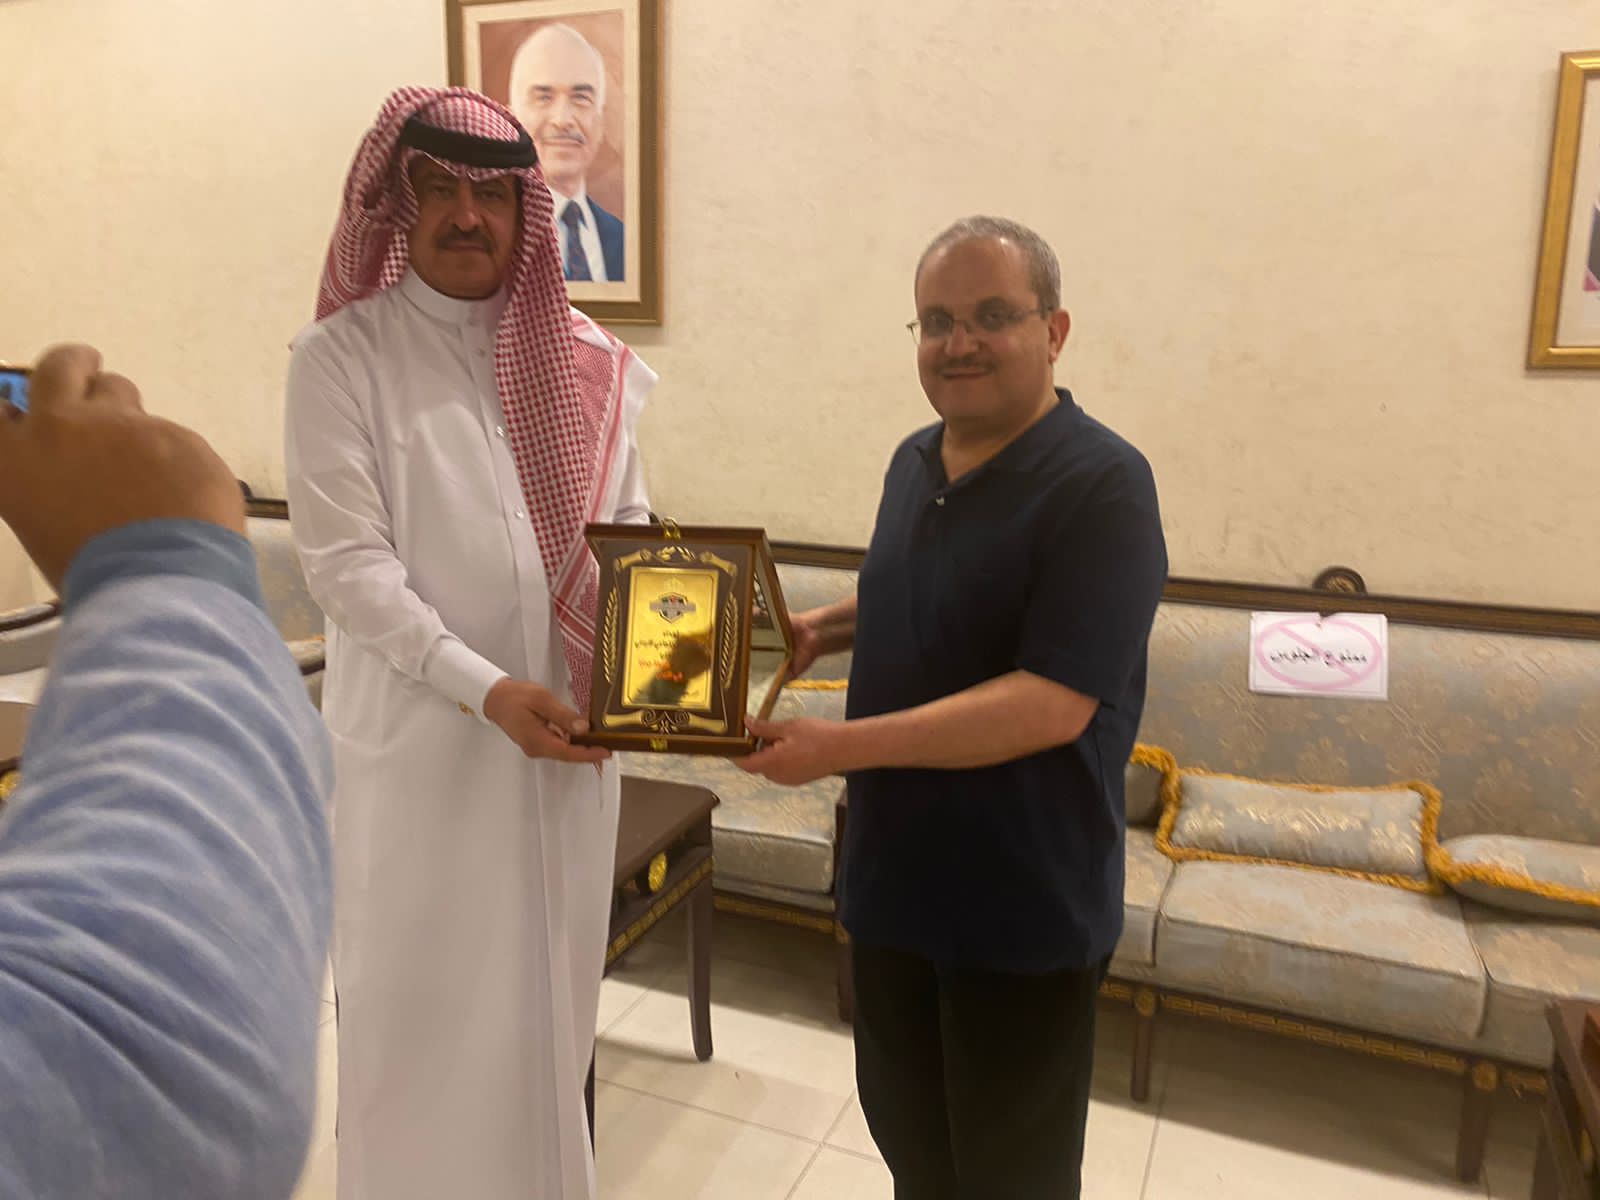 حاكمية جامعة جدارا تلتقي القنصل العام والجالية الأردنية في دبي وتزور معرض إكسبو